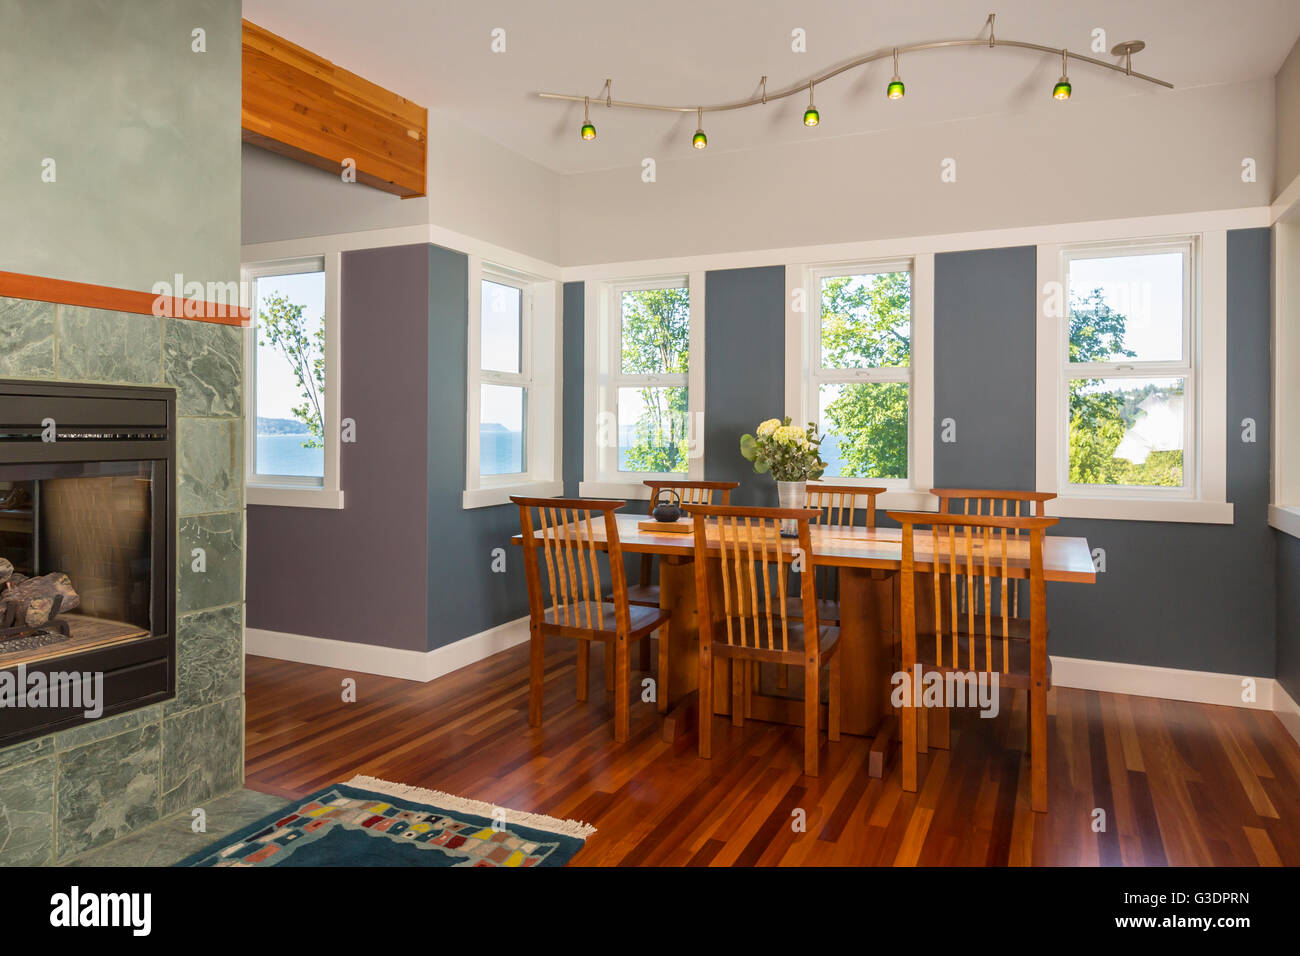 Bereich Esstisch & Stühle mit Holzböden, gestrichene Wände, Akzentbeleuchtung & Windows in zeitgenössische gehobene Wohngebäude anzeigen Stockfoto